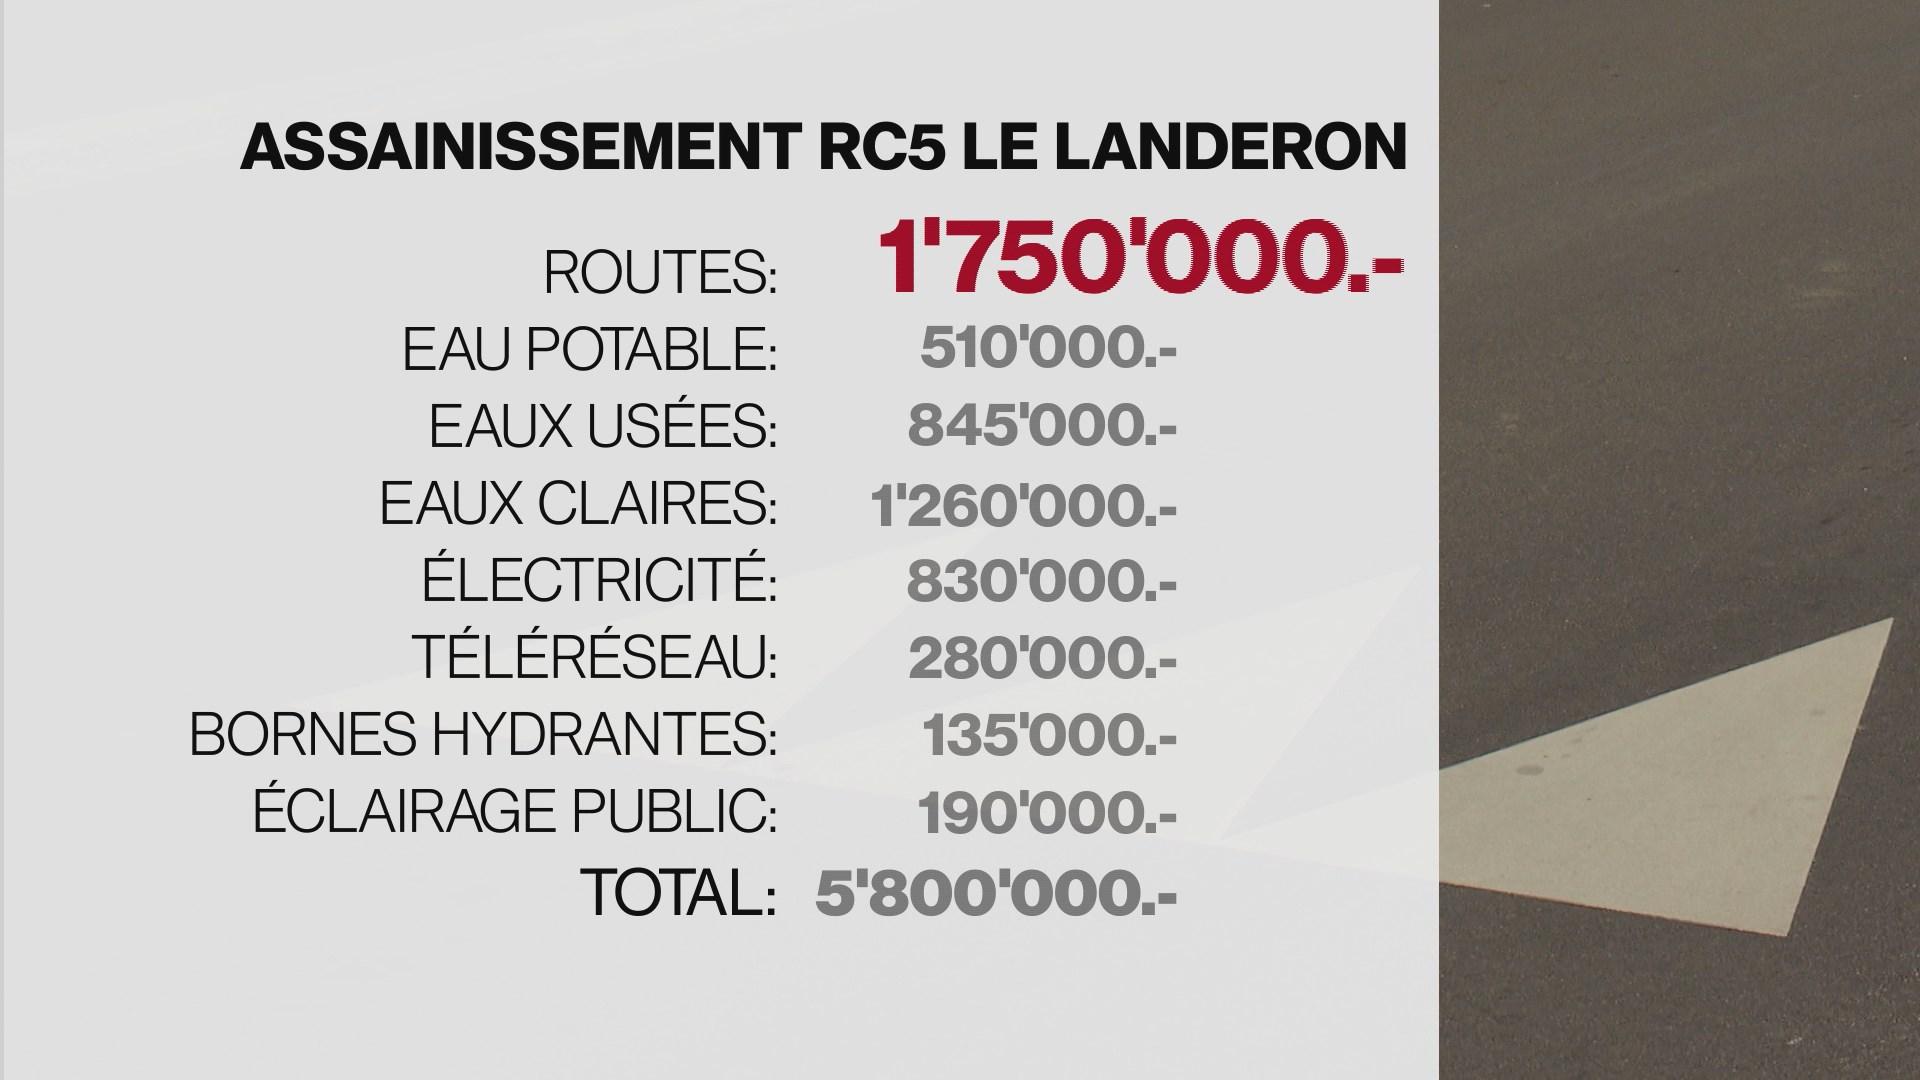 L'assainissement de la RC5 au Landeron, dans le canton de Neuchâtel, a engendré des coûts annexes importants. [RTS]